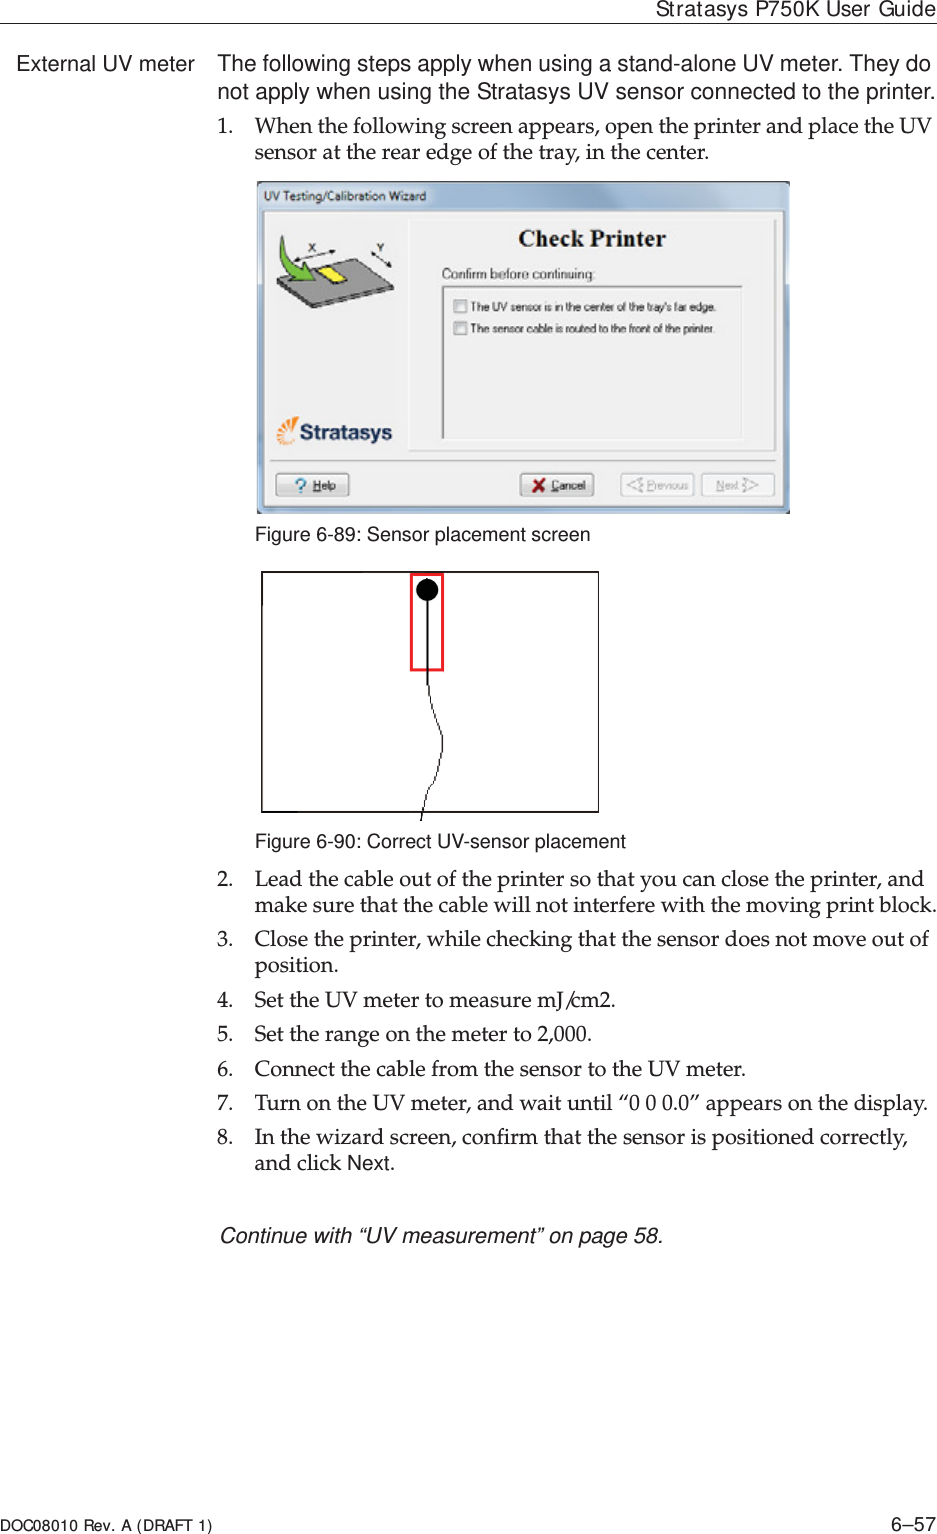 DOC08010 Rev. A (DRAFT 1) 6–57Stratasys P750K User GuideExternal UV meter The following steps apply when using a stand-alone UV meter. They do not apply when using the Stratasys UV sensor connected to the printer.1. Whenȱtheȱfollowingȱscreenȱappears,ȱopenȱtheȱprinterȱandȱplaceȱtheȱUVȱsensorȱatȱtheȱrearȱedgeȱofȱtheȱtray,ȱinȱtheȱcenter.Figure 6-89: Sensor placement screenFigure 6-90: Correct UV-sensor placement2. Leadȱtheȱcableȱoutȱofȱtheȱprinterȱsoȱthatȱyouȱcanȱcloseȱtheȱprinter,ȱandȱmakeȱsureȱthatȱtheȱcableȱwillȱnotȱinterfereȱwithȱtheȱmovingȱprintȱblock.3. Closeȱtheȱprinter,ȱwhileȱcheckingȱthatȱtheȱsensorȱdoesȱnotȱmoveȱoutȱofȱposition.4. SetȱtheȱUVȱmeterȱtoȱmeasureȱmJ/cm2.5. Setȱtheȱrangeȱonȱtheȱmeterȱtoȱ2,000.6. ConnectȱtheȱcableȱfromȱtheȱsensorȱtoȱtheȱUVȱmeter.ȱ7. TurnȱonȱtheȱUVȱmeter,ȱandȱwaitȱuntilȱ“0ȱ0ȱ0.0”ȱappearsȱonȱtheȱdisplay.8. Inȱtheȱwizardȱscreen,ȱconfirmȱthatȱtheȱsensorȱisȱpositionedȱcorrectly,ȱandȱclickȱNext.Continue with “UV measurement” on page 58.